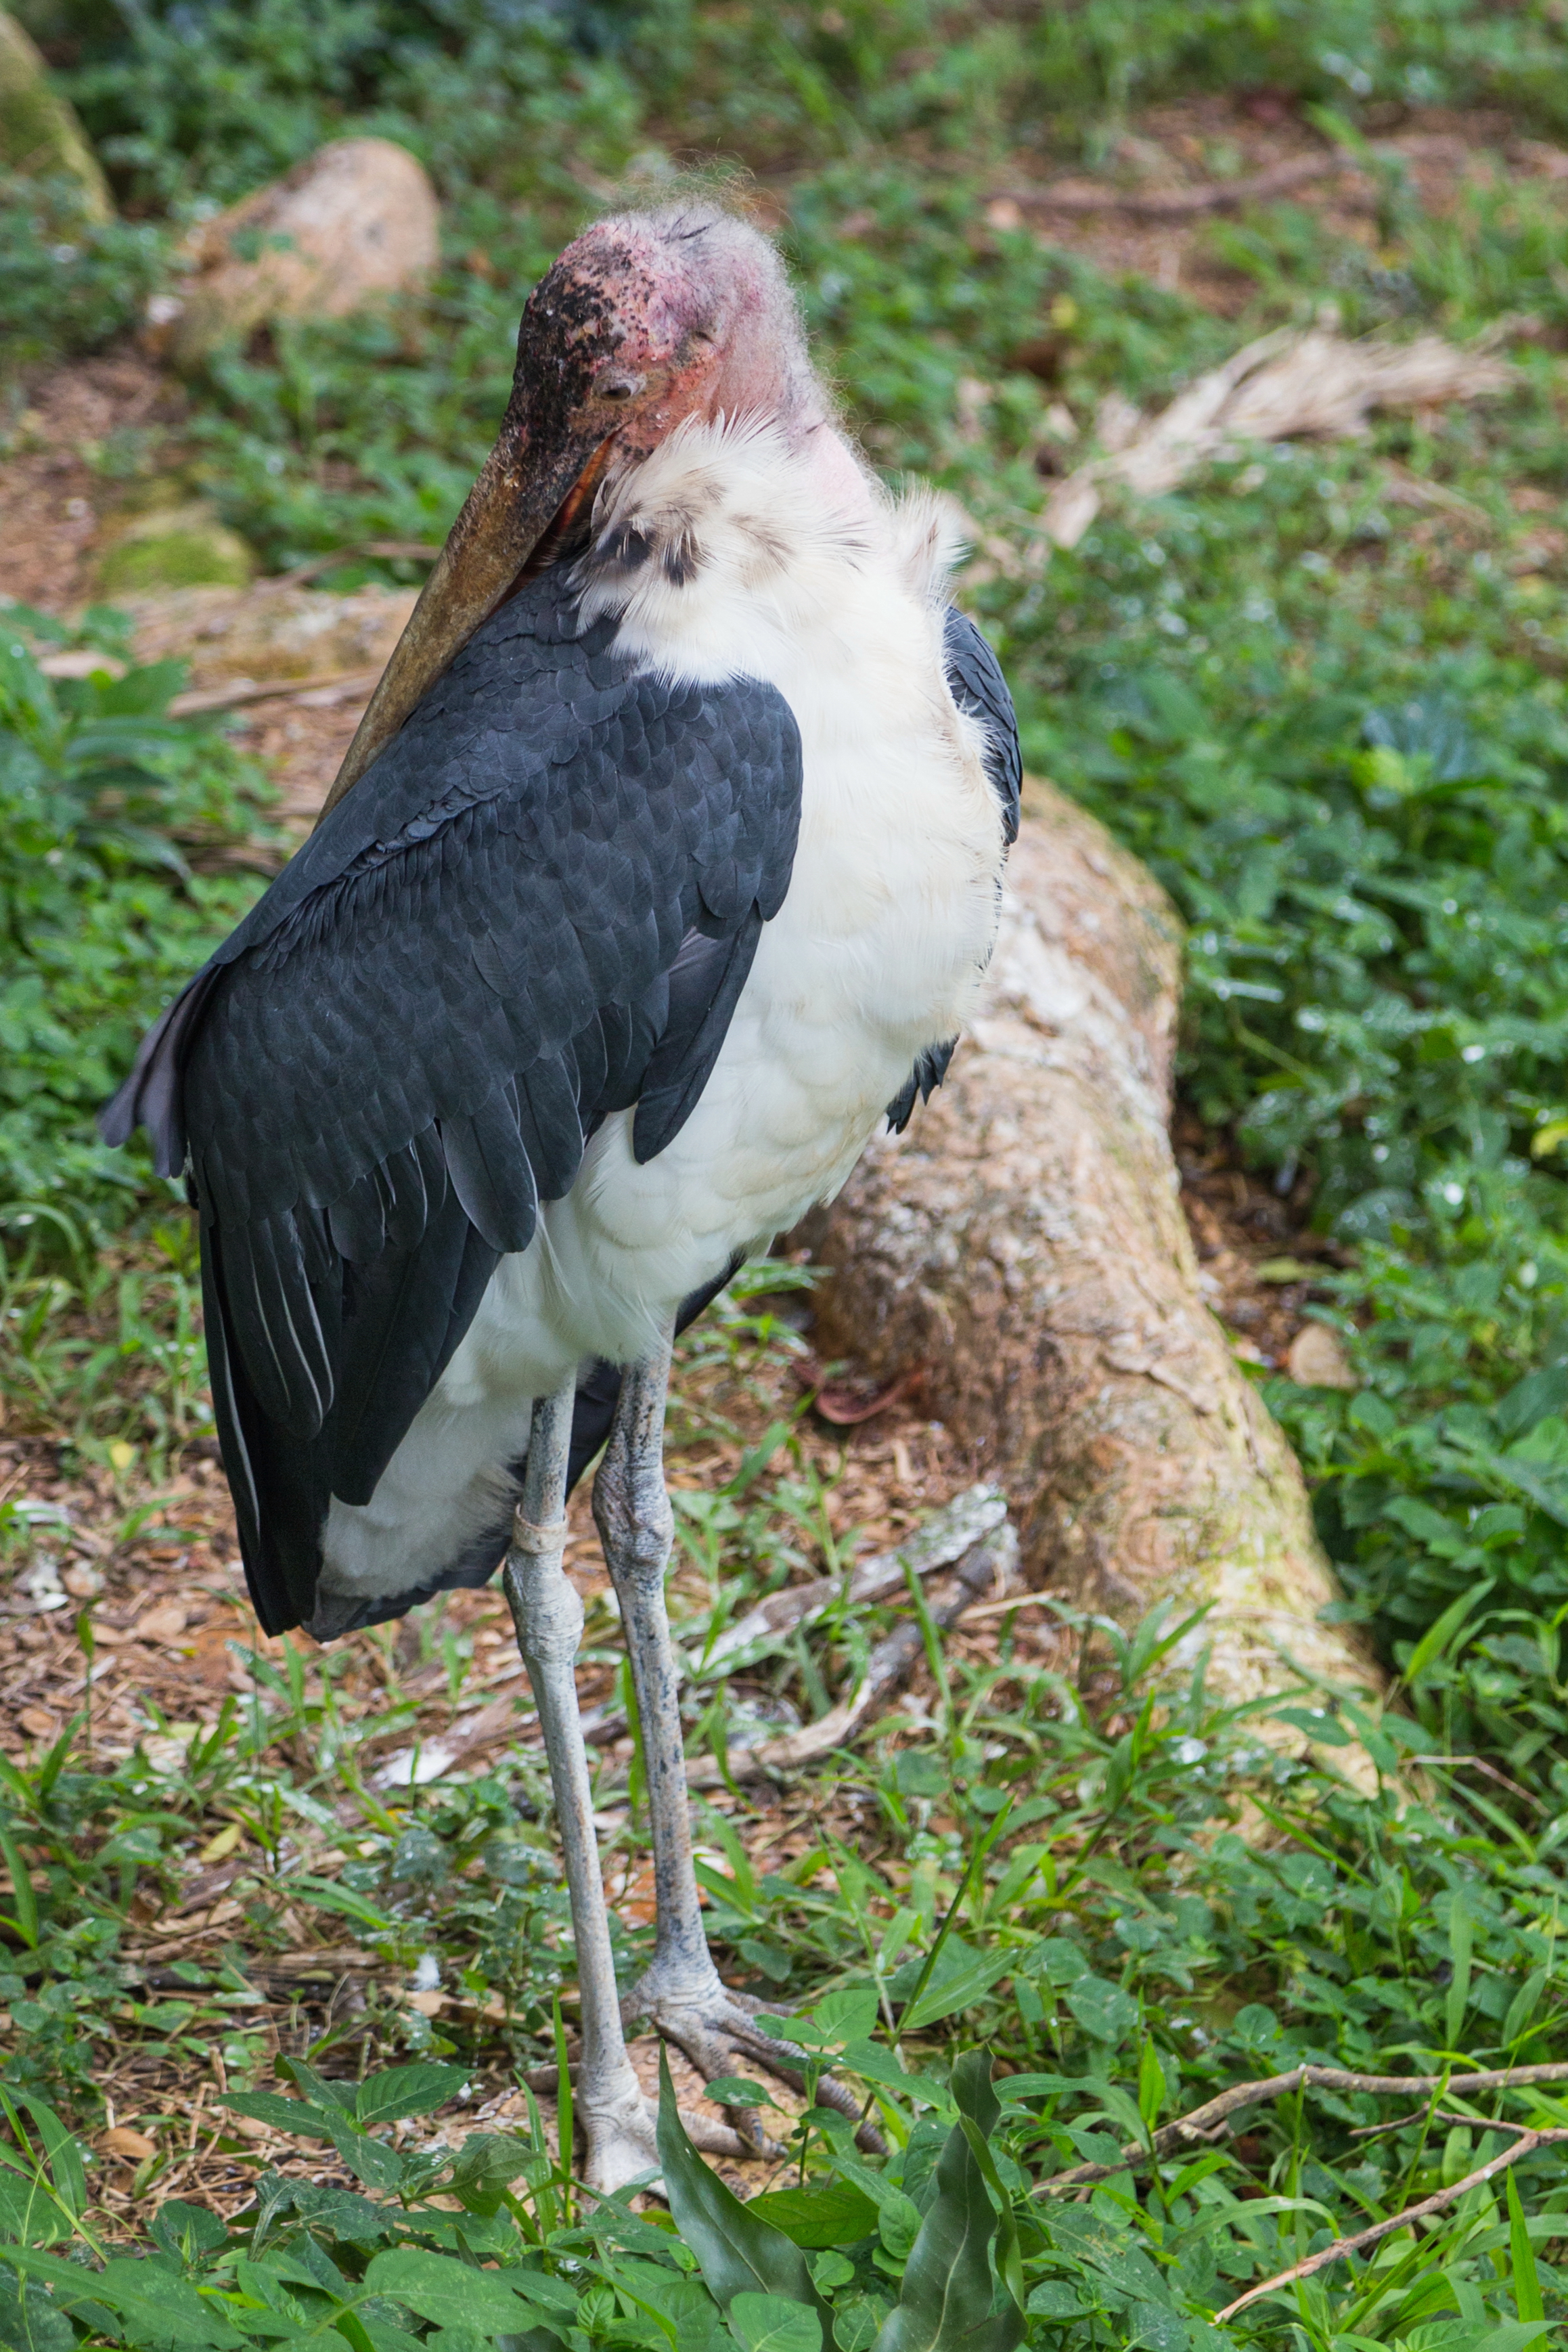 2016 Singapur, Jurong Bird Park (121)